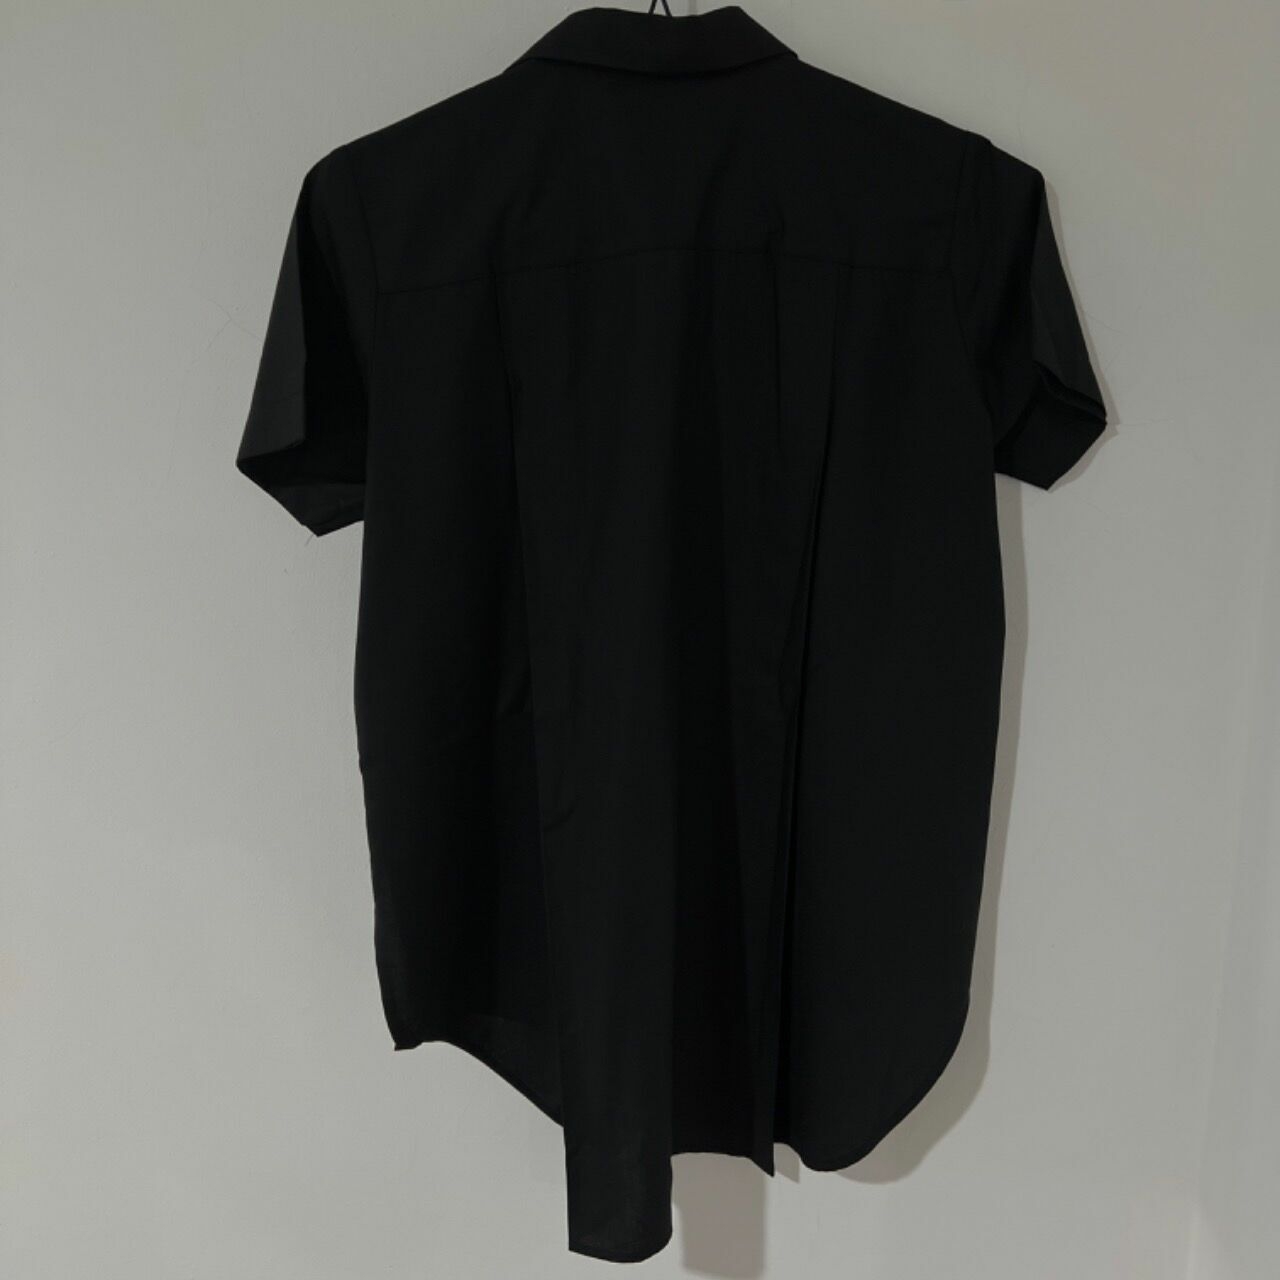 Masshiro Black Shirt